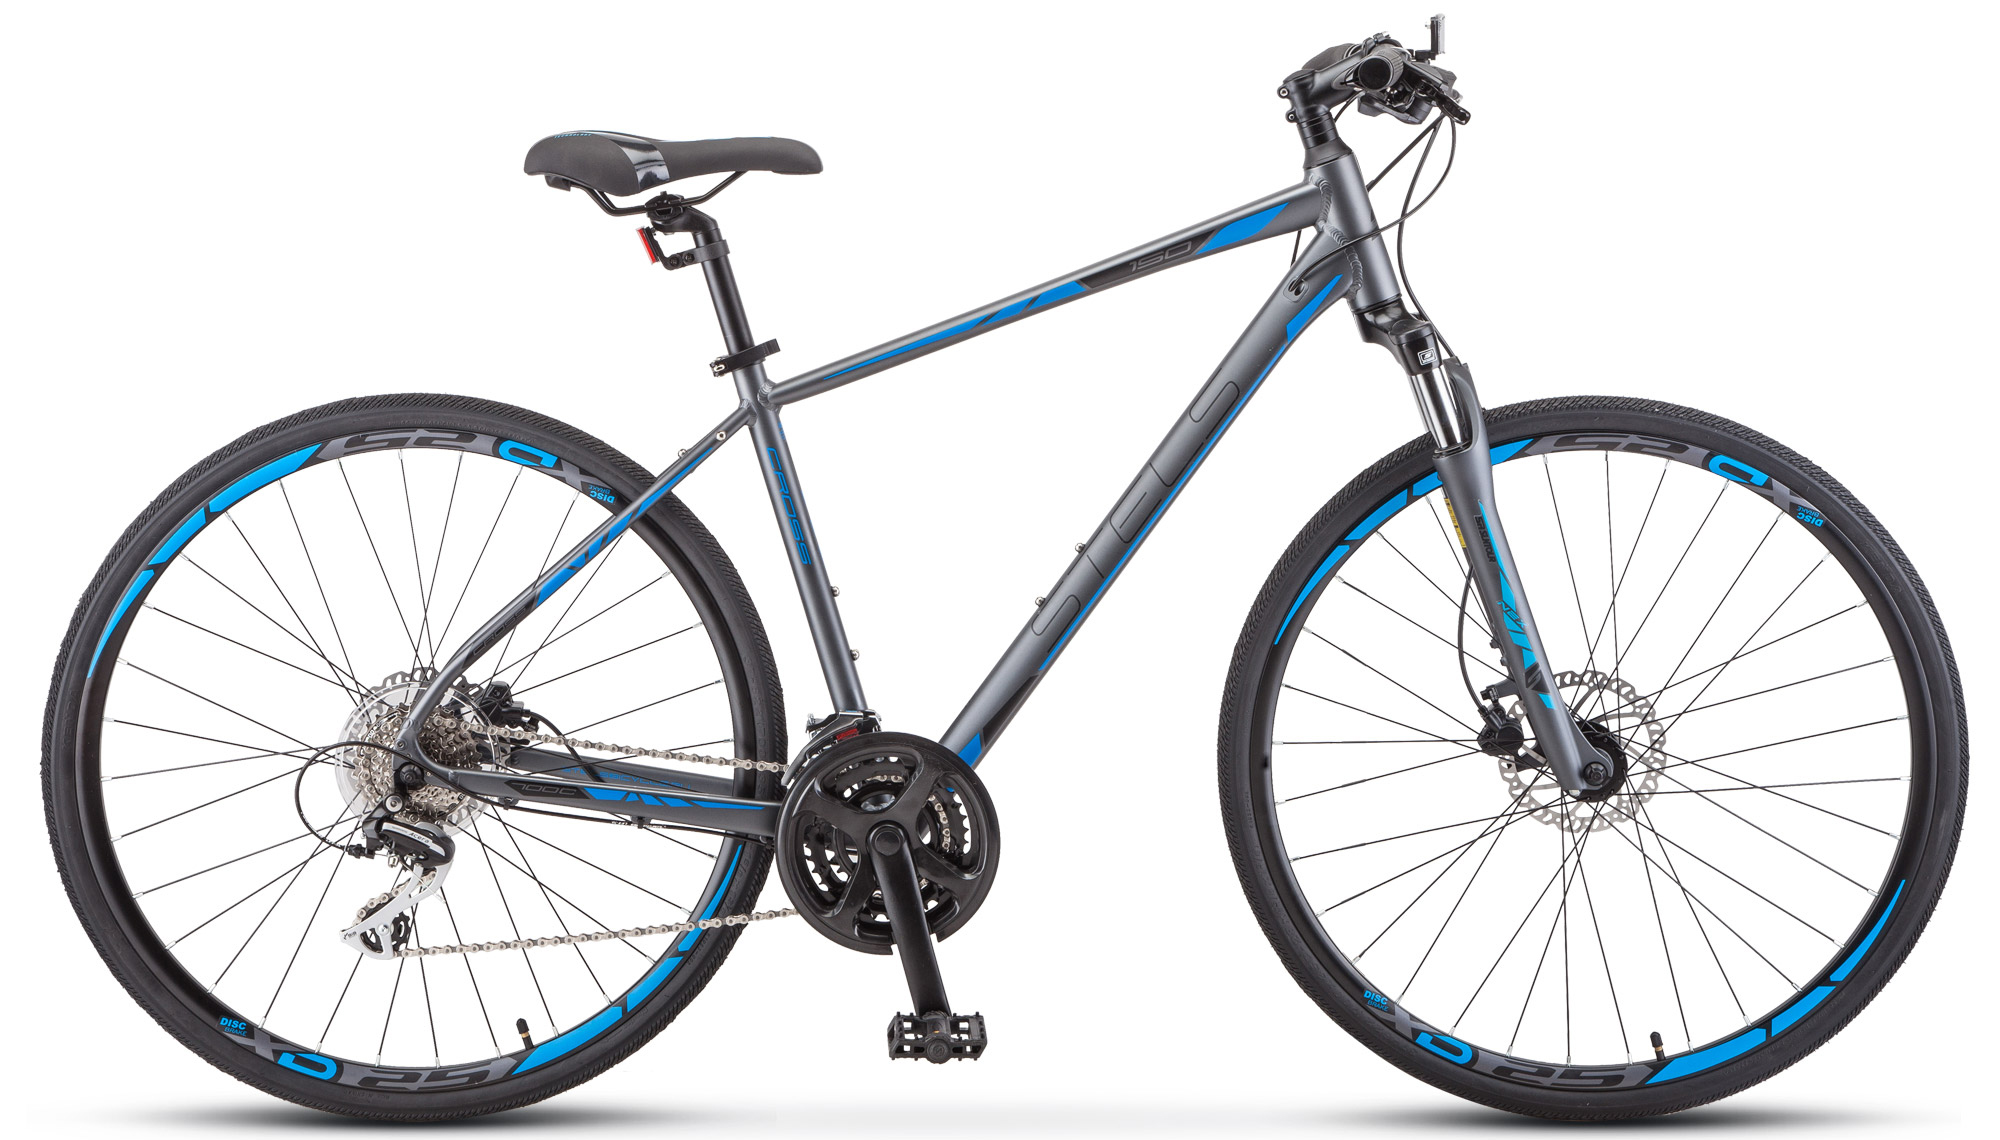  Отзывы о Городском велосипеде Stels Cross 150 D Gent V010 2019